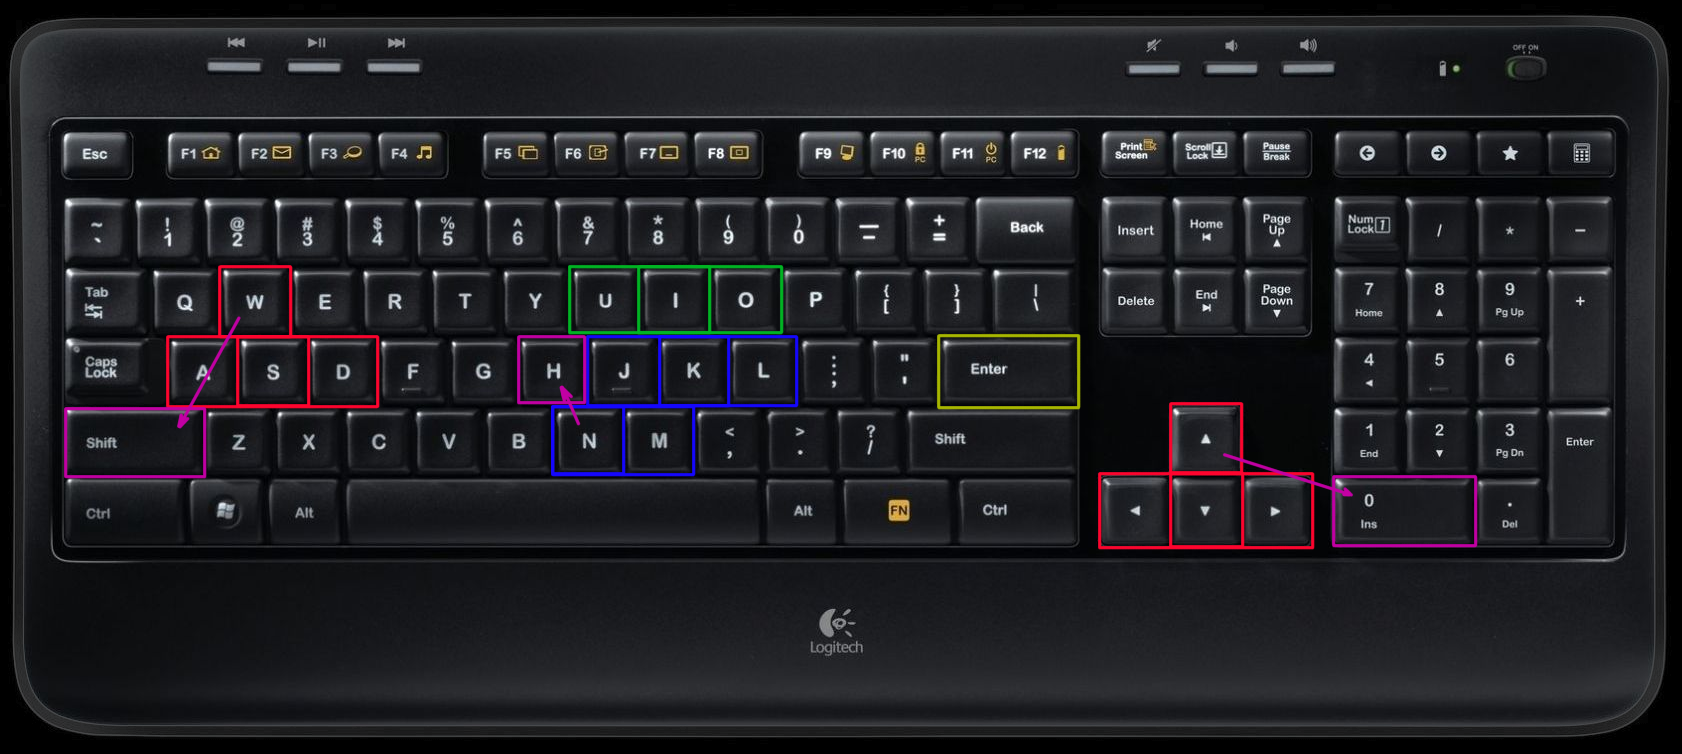 Нажать клавишу insert. Insert на ноутбуке Acer. Insert (клавиша). Insert на клавиатуре. Insert клавиша на ноутбуке.